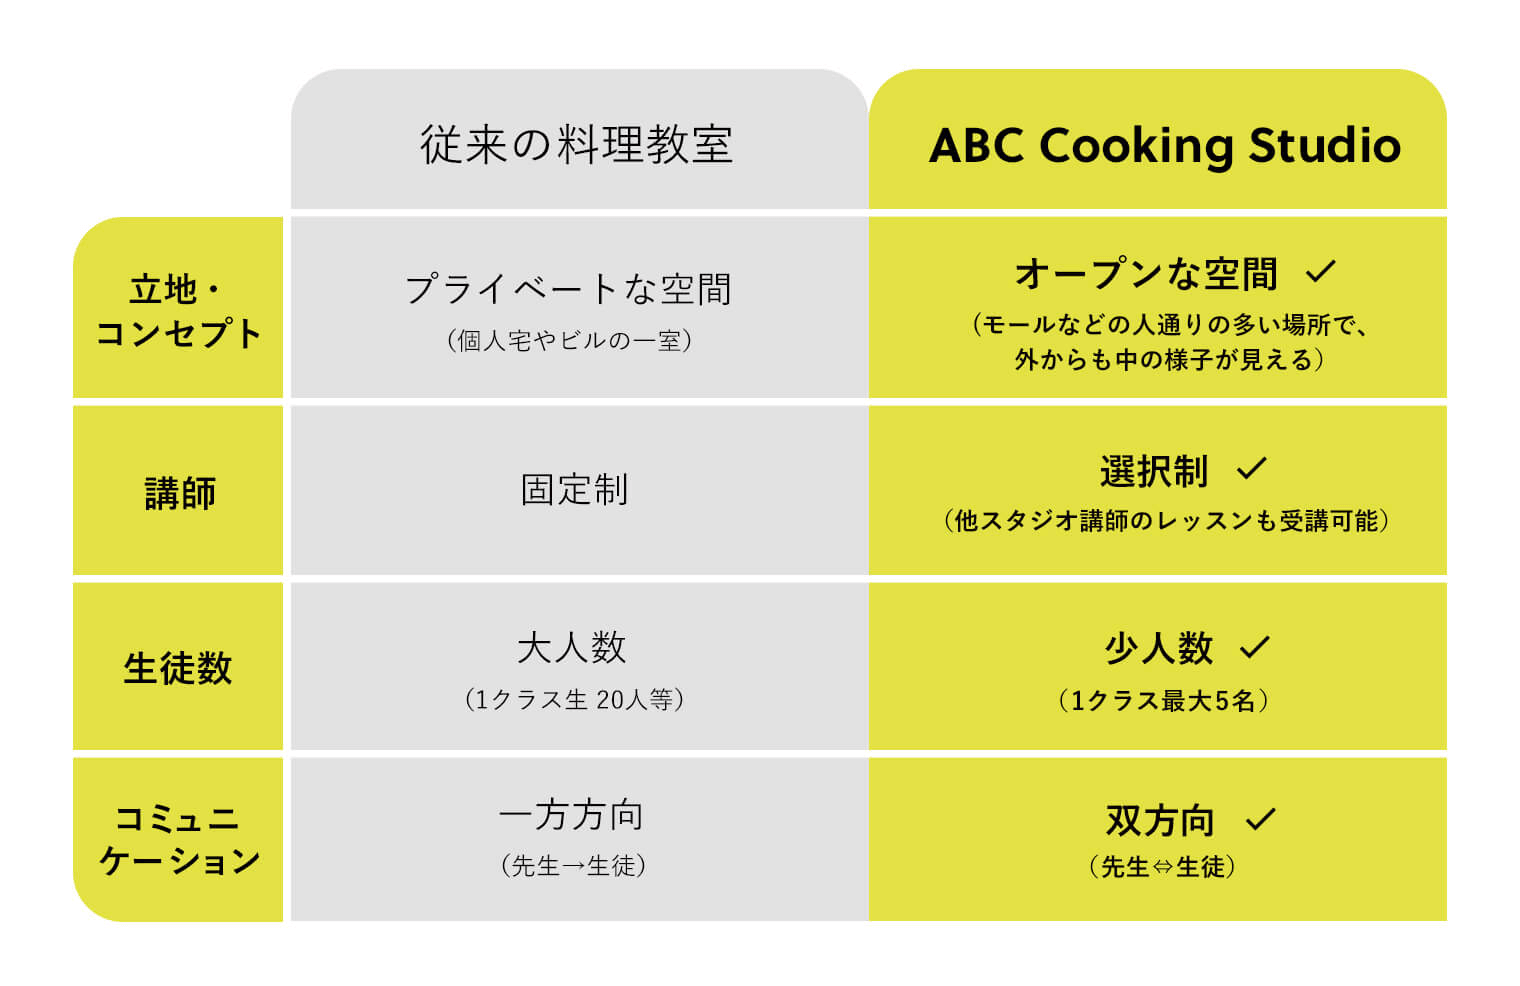 ABCクッキングスタジオのと従来の料理教室との違いを図解